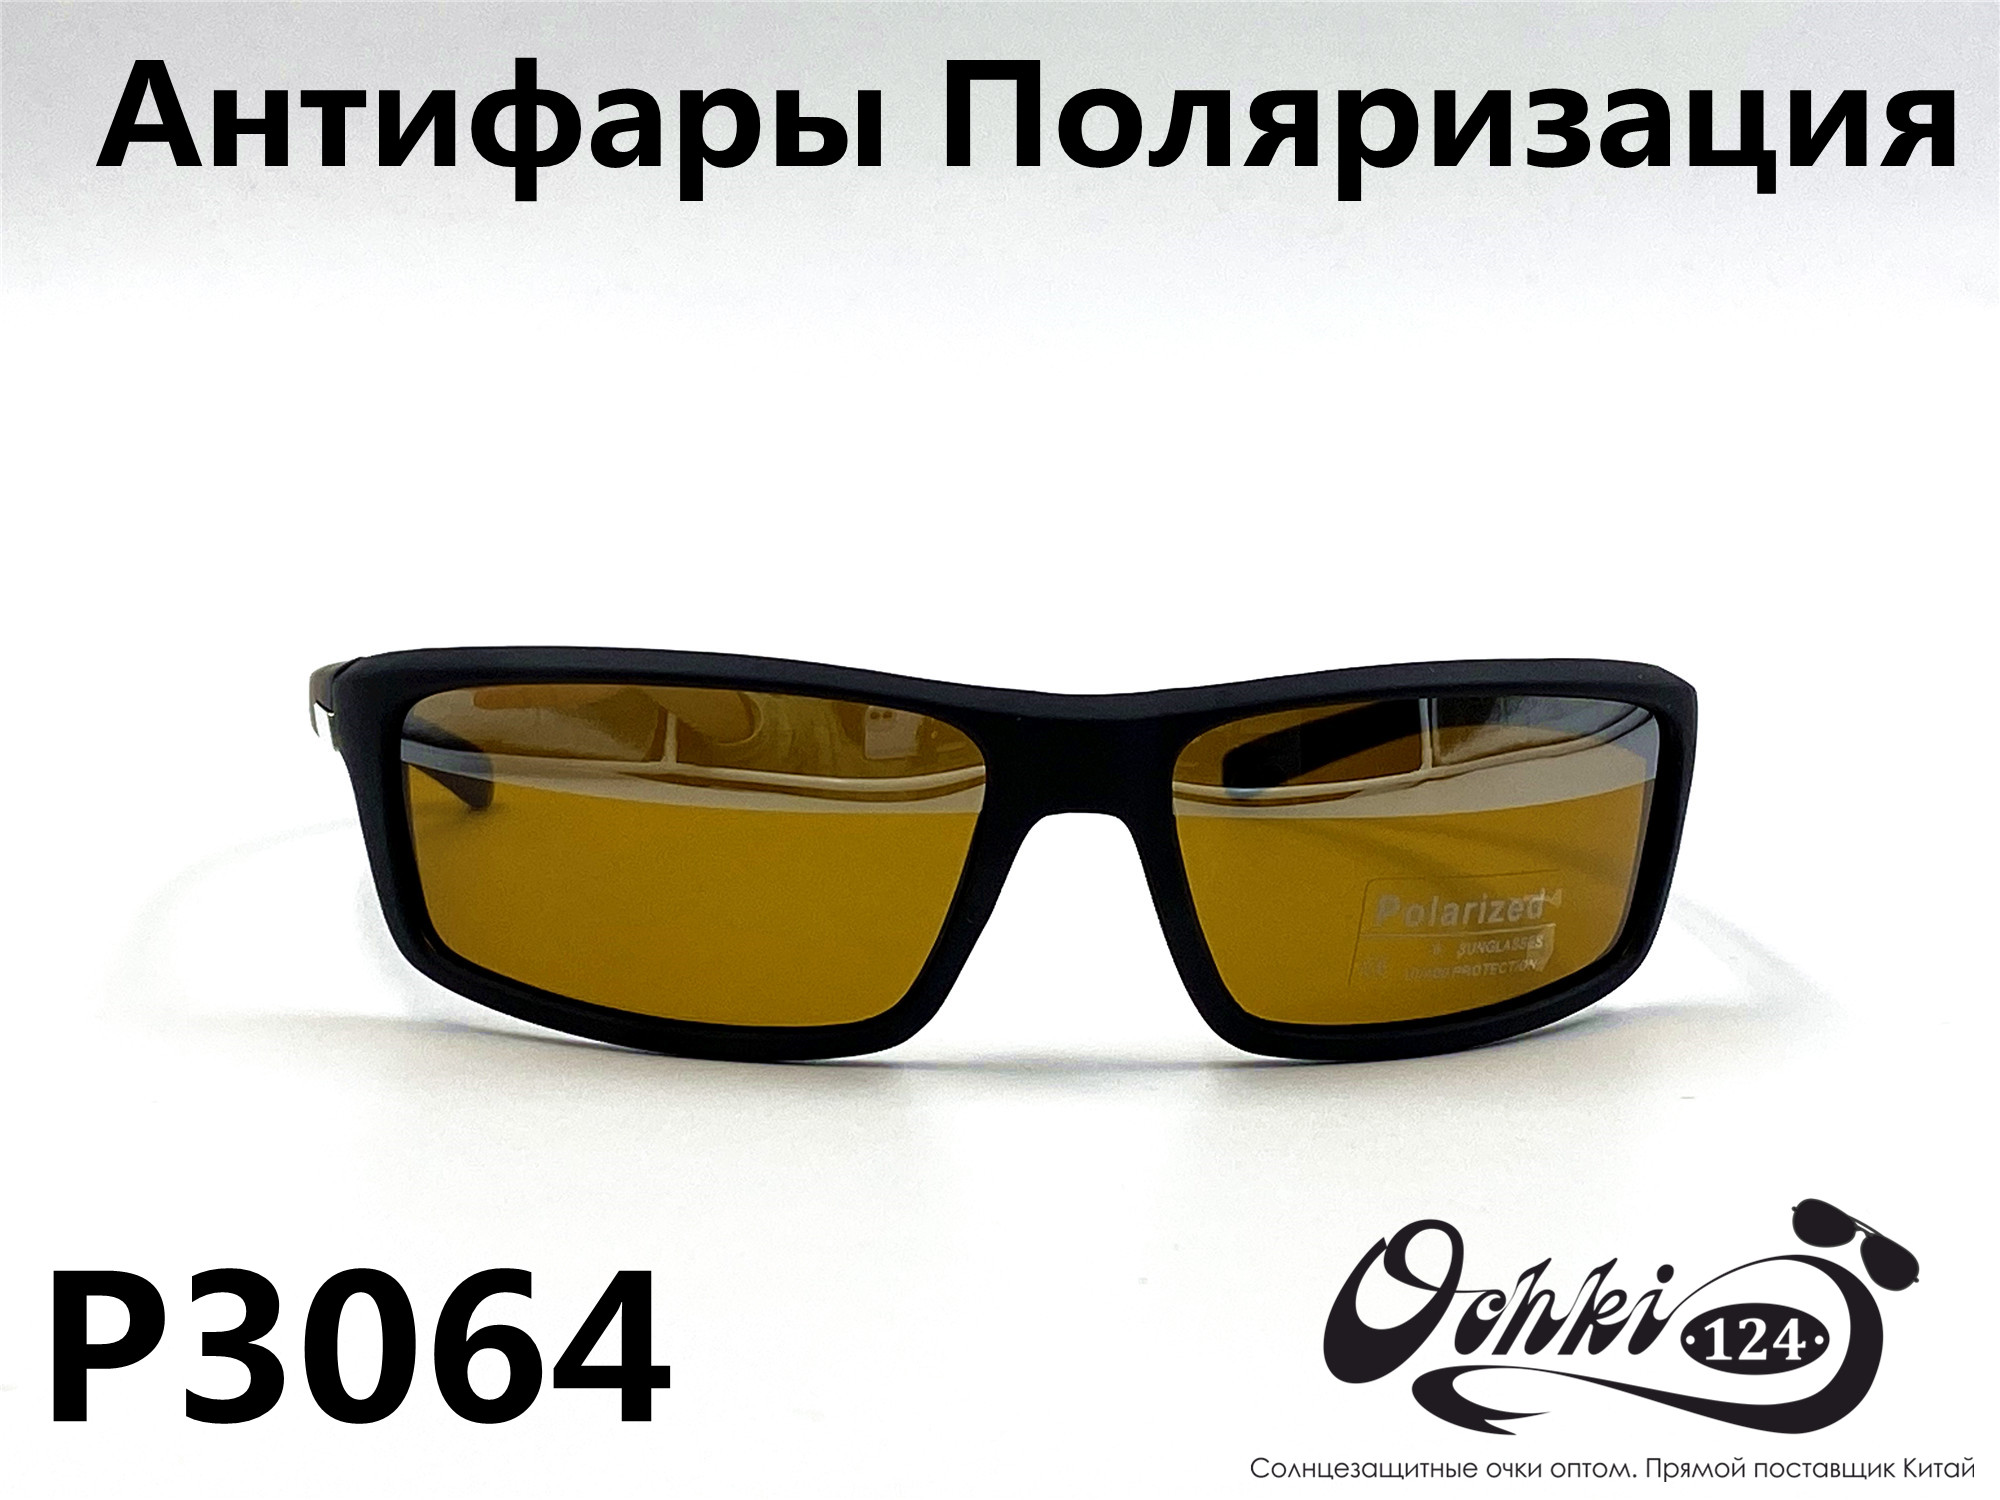  Солнцезащитные очки картинка 2022 Мужские антифары-спорт, с зеркальной полосой, Желтый Polarized P3064-2 